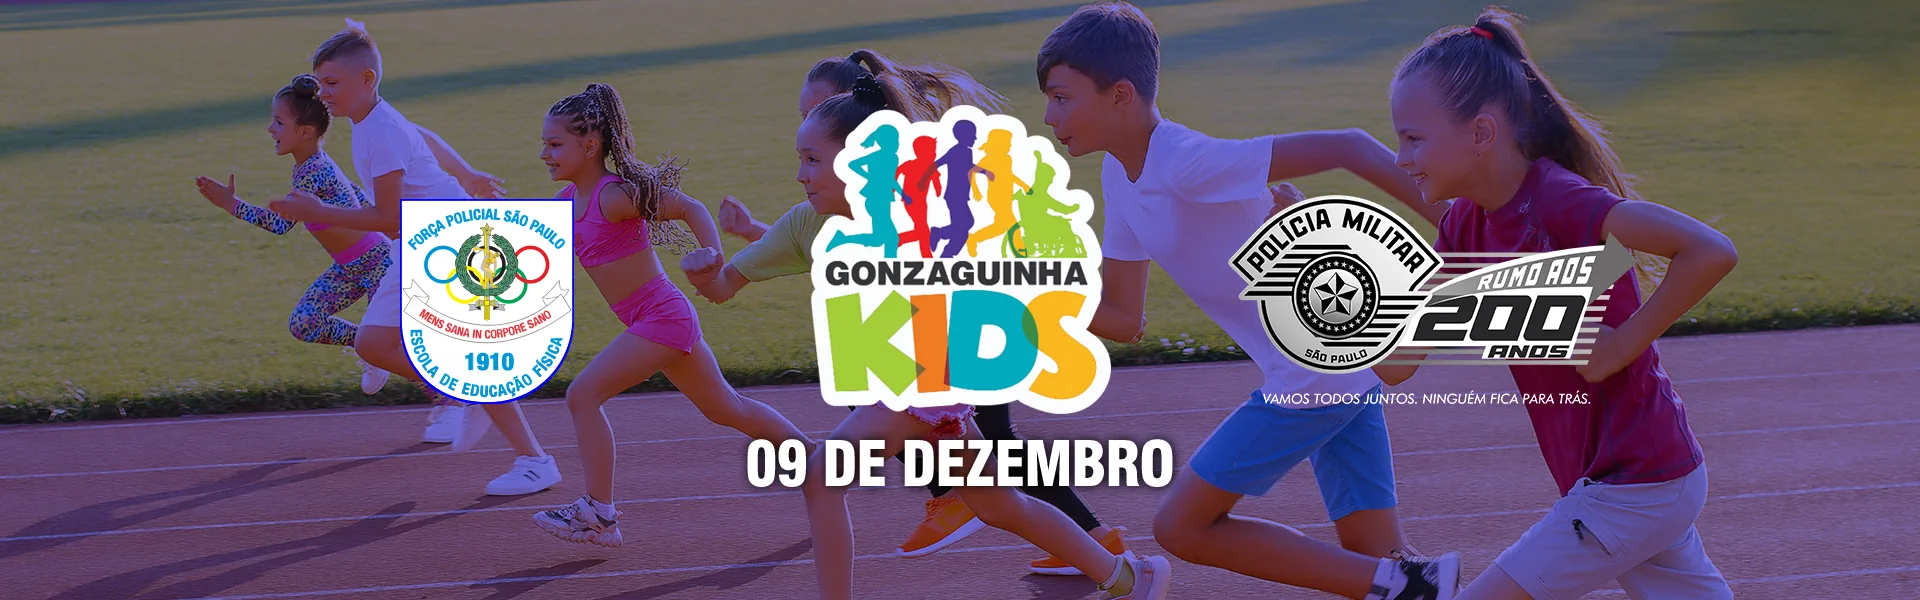 Gonzaguinha Kids